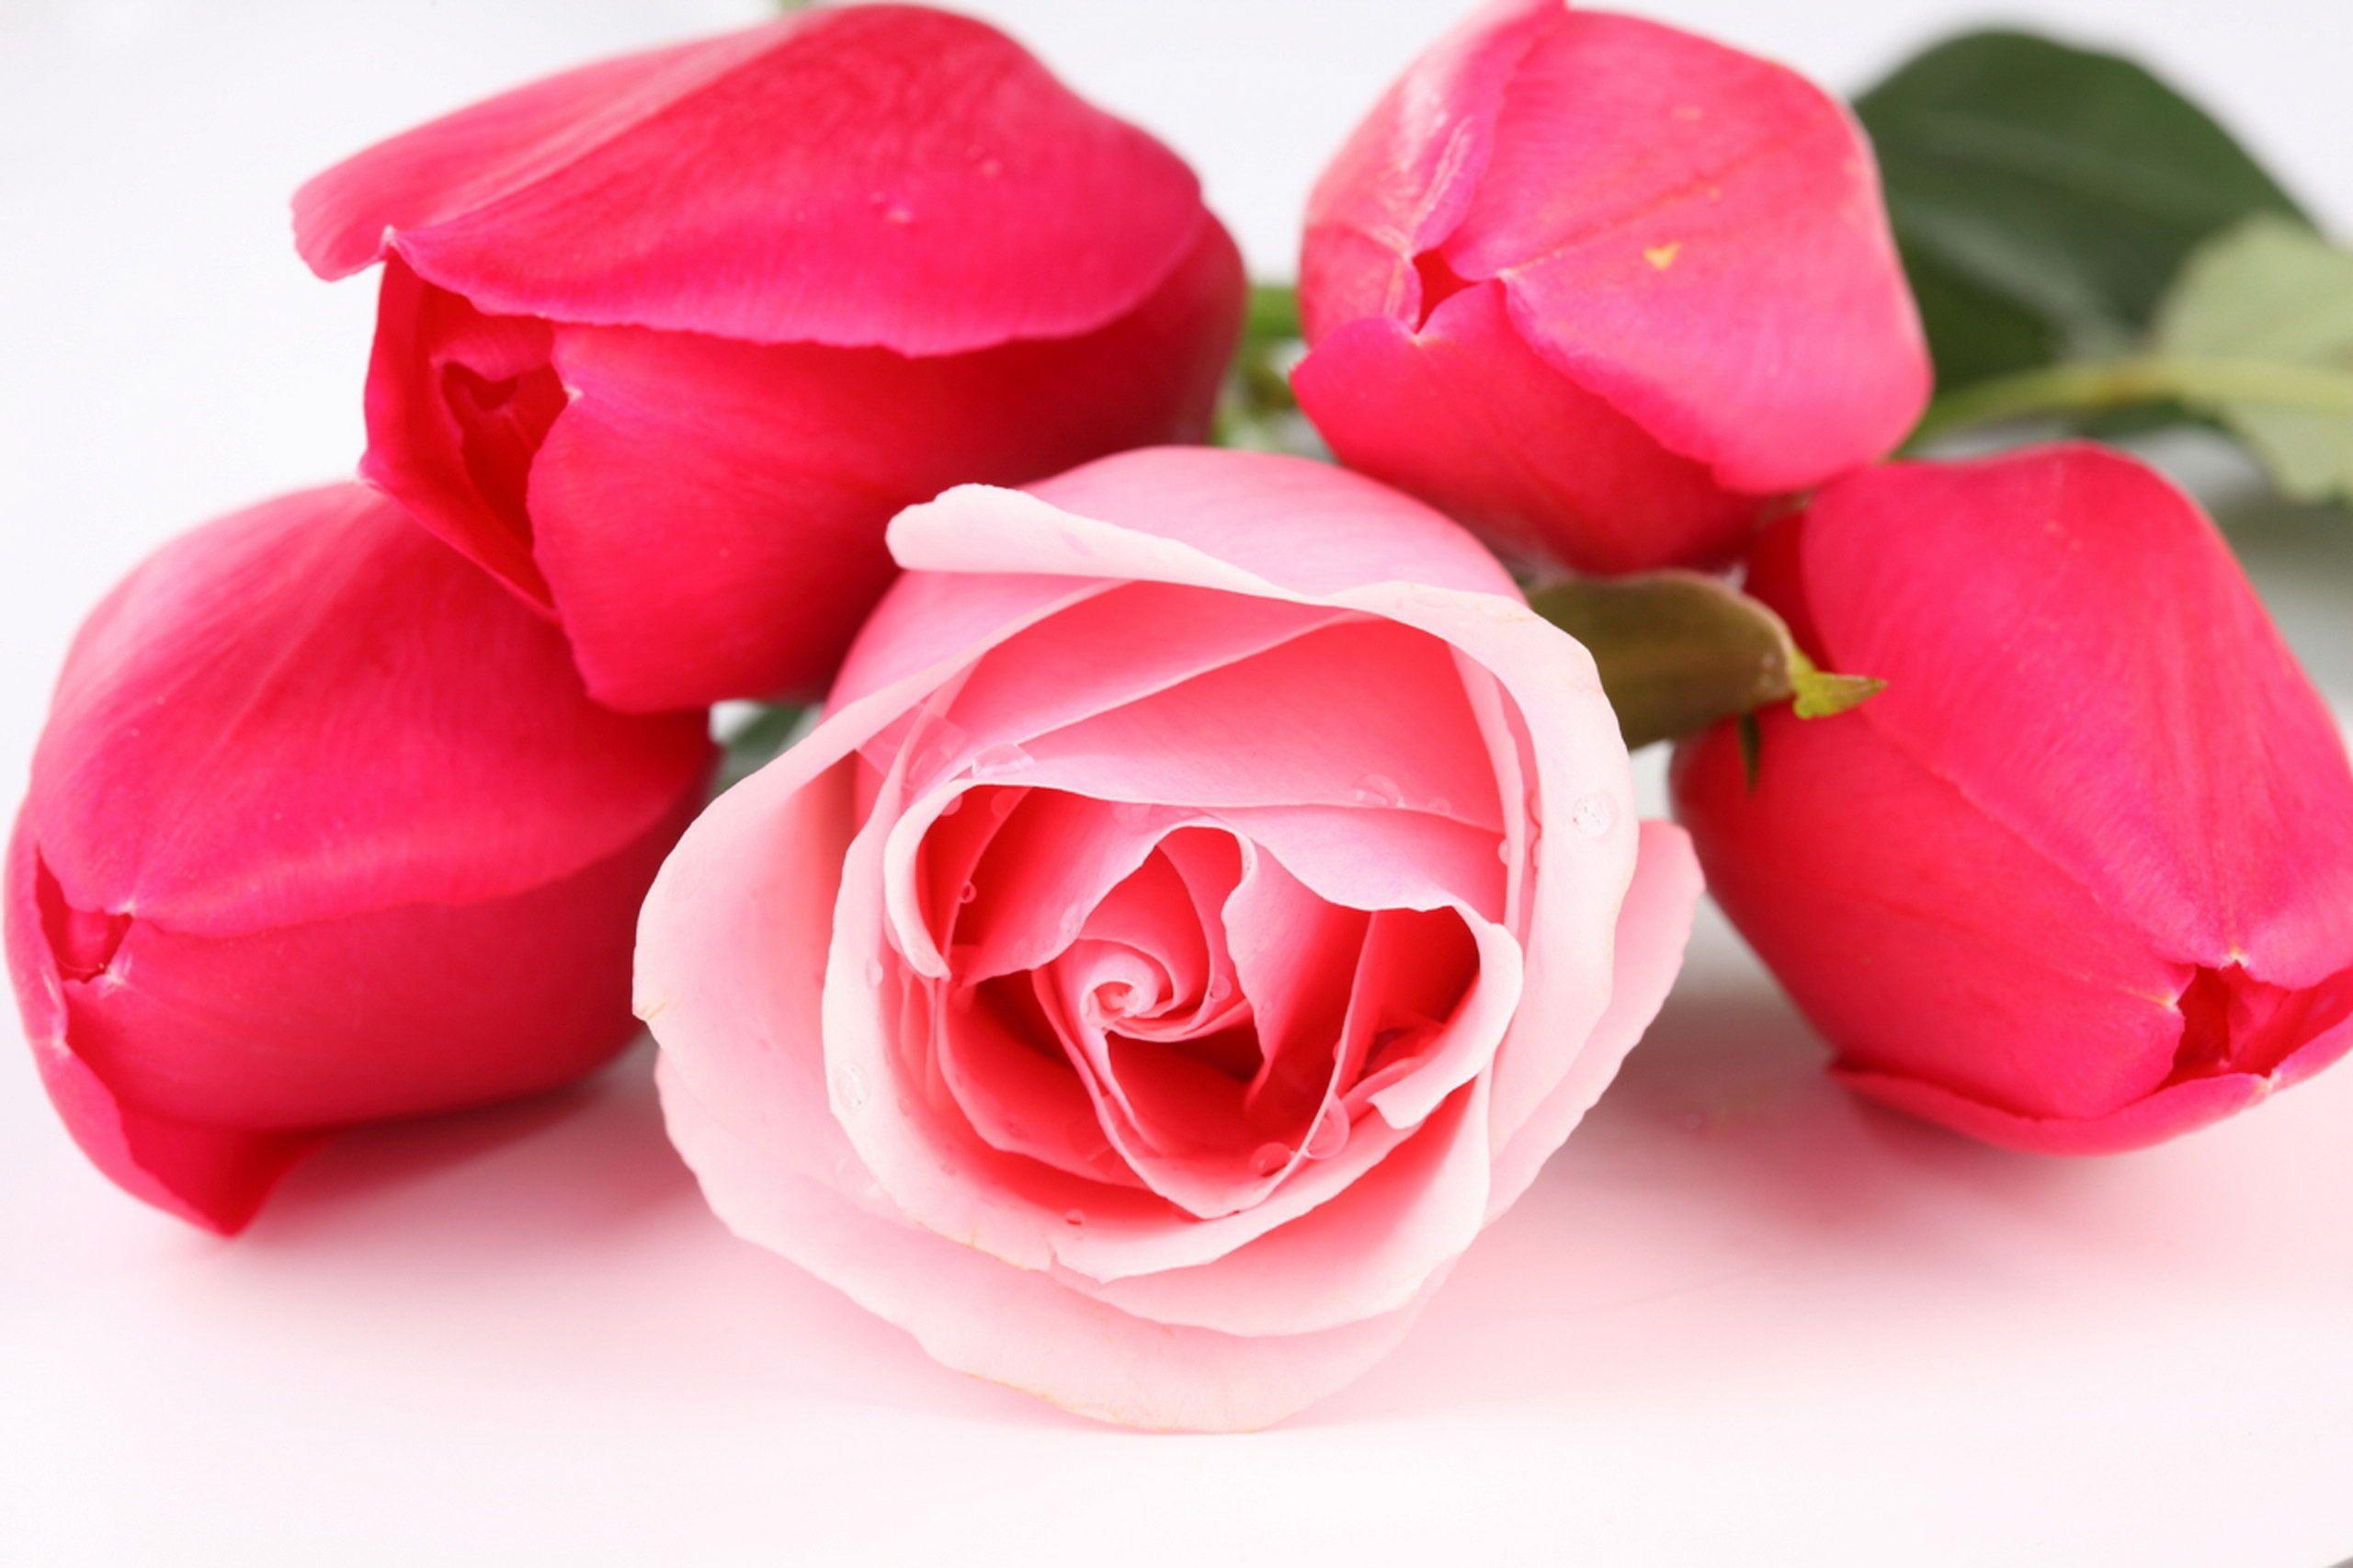 D Rose Wallpaper Desktop High Photo Lovely Roses HD Flowers Of Pc